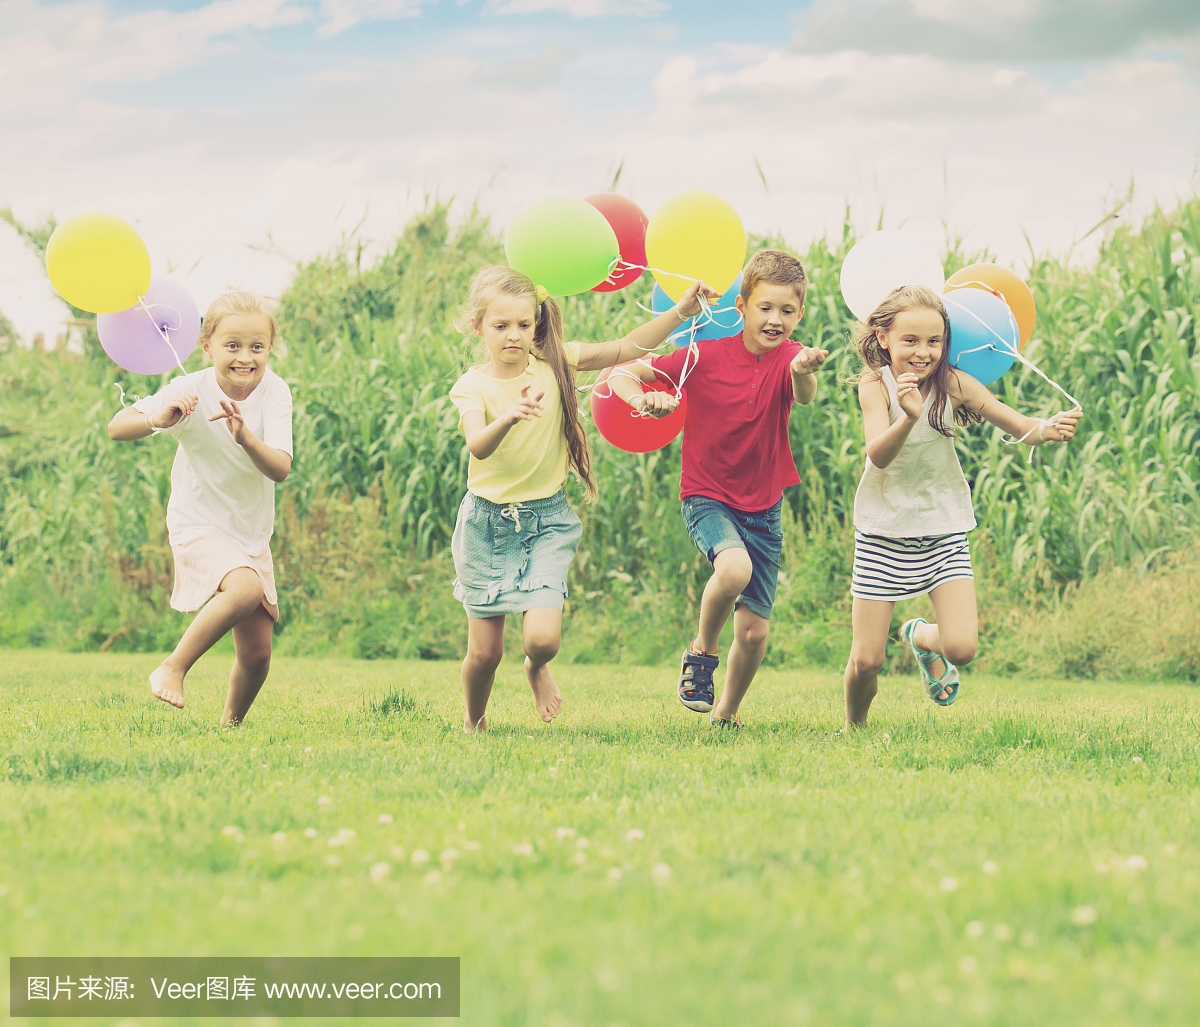 四个笑的孩子跑在绿色的草地上